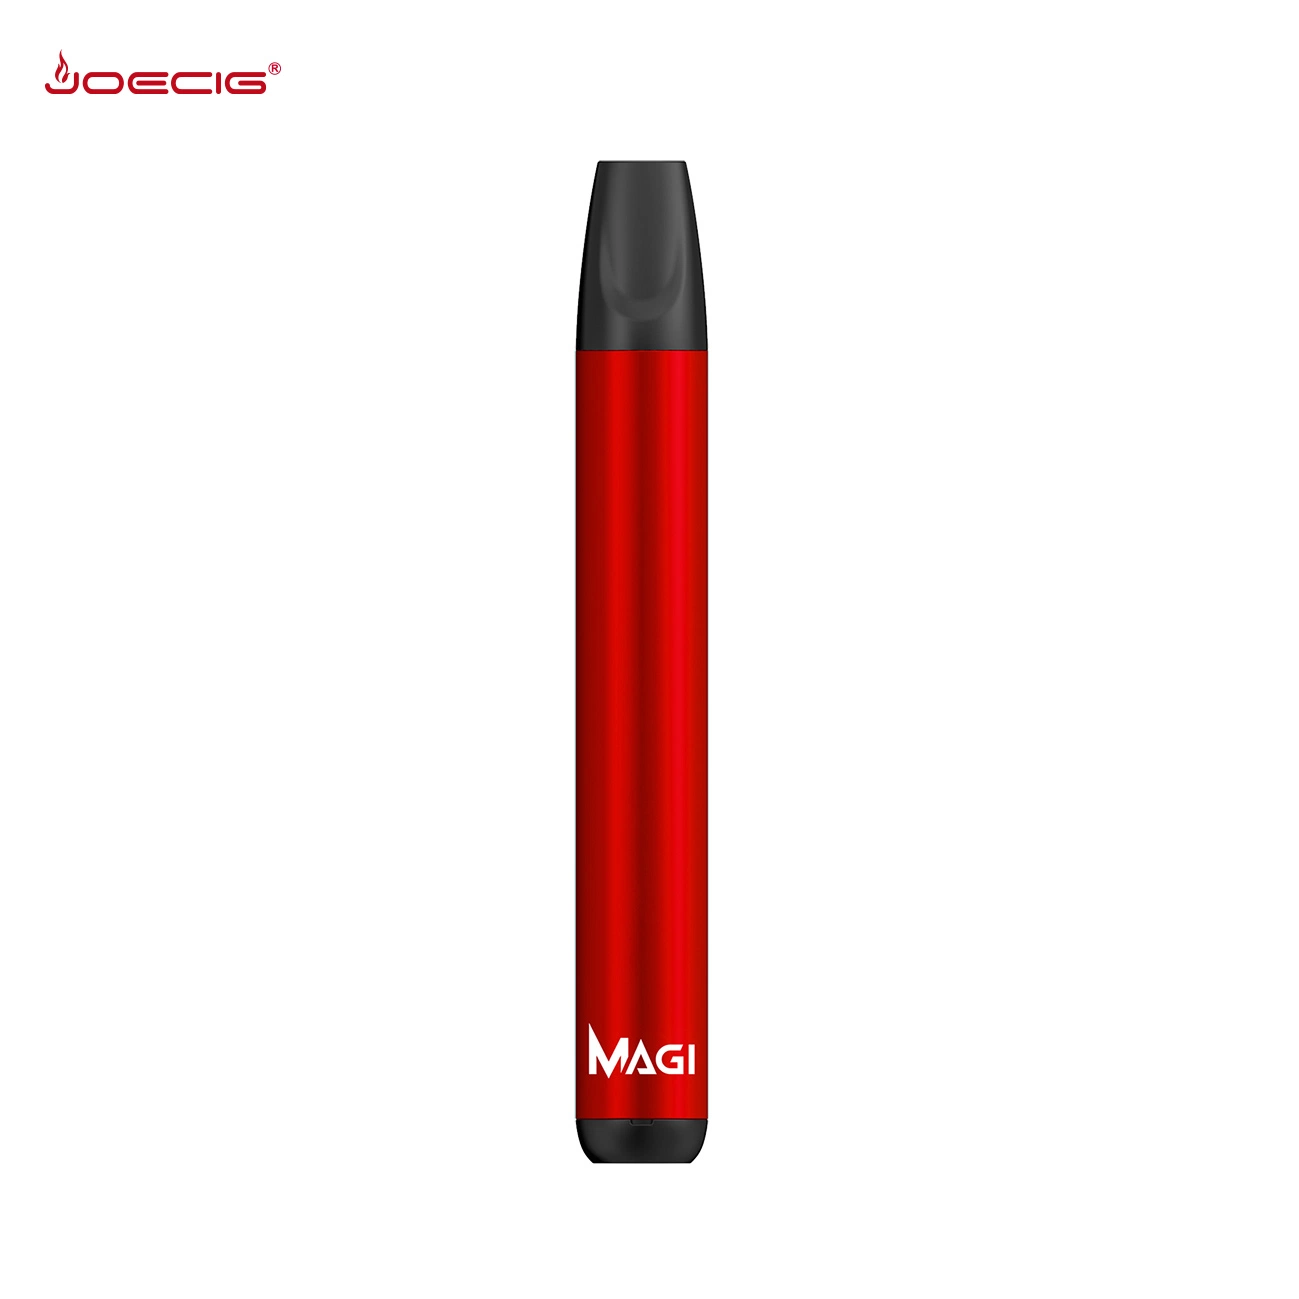 Diseño único de 800 inhalaciones magos Vape desechables Kits E cigarrillo China Private Label vaporizador Pen